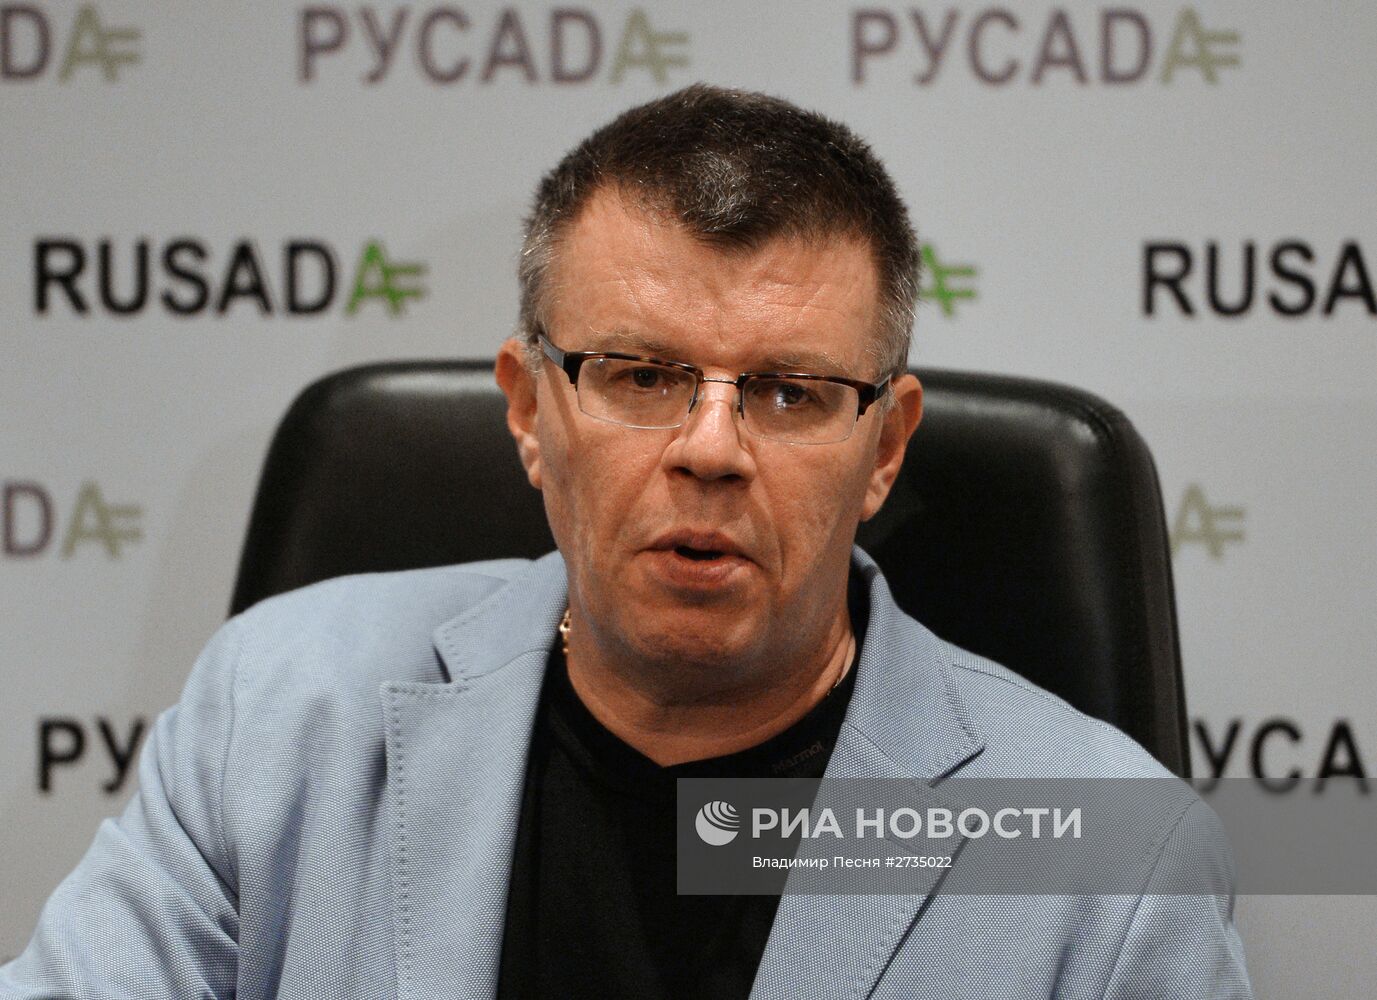 Пресс-конференция главы РУСАДА Никиты Камаева